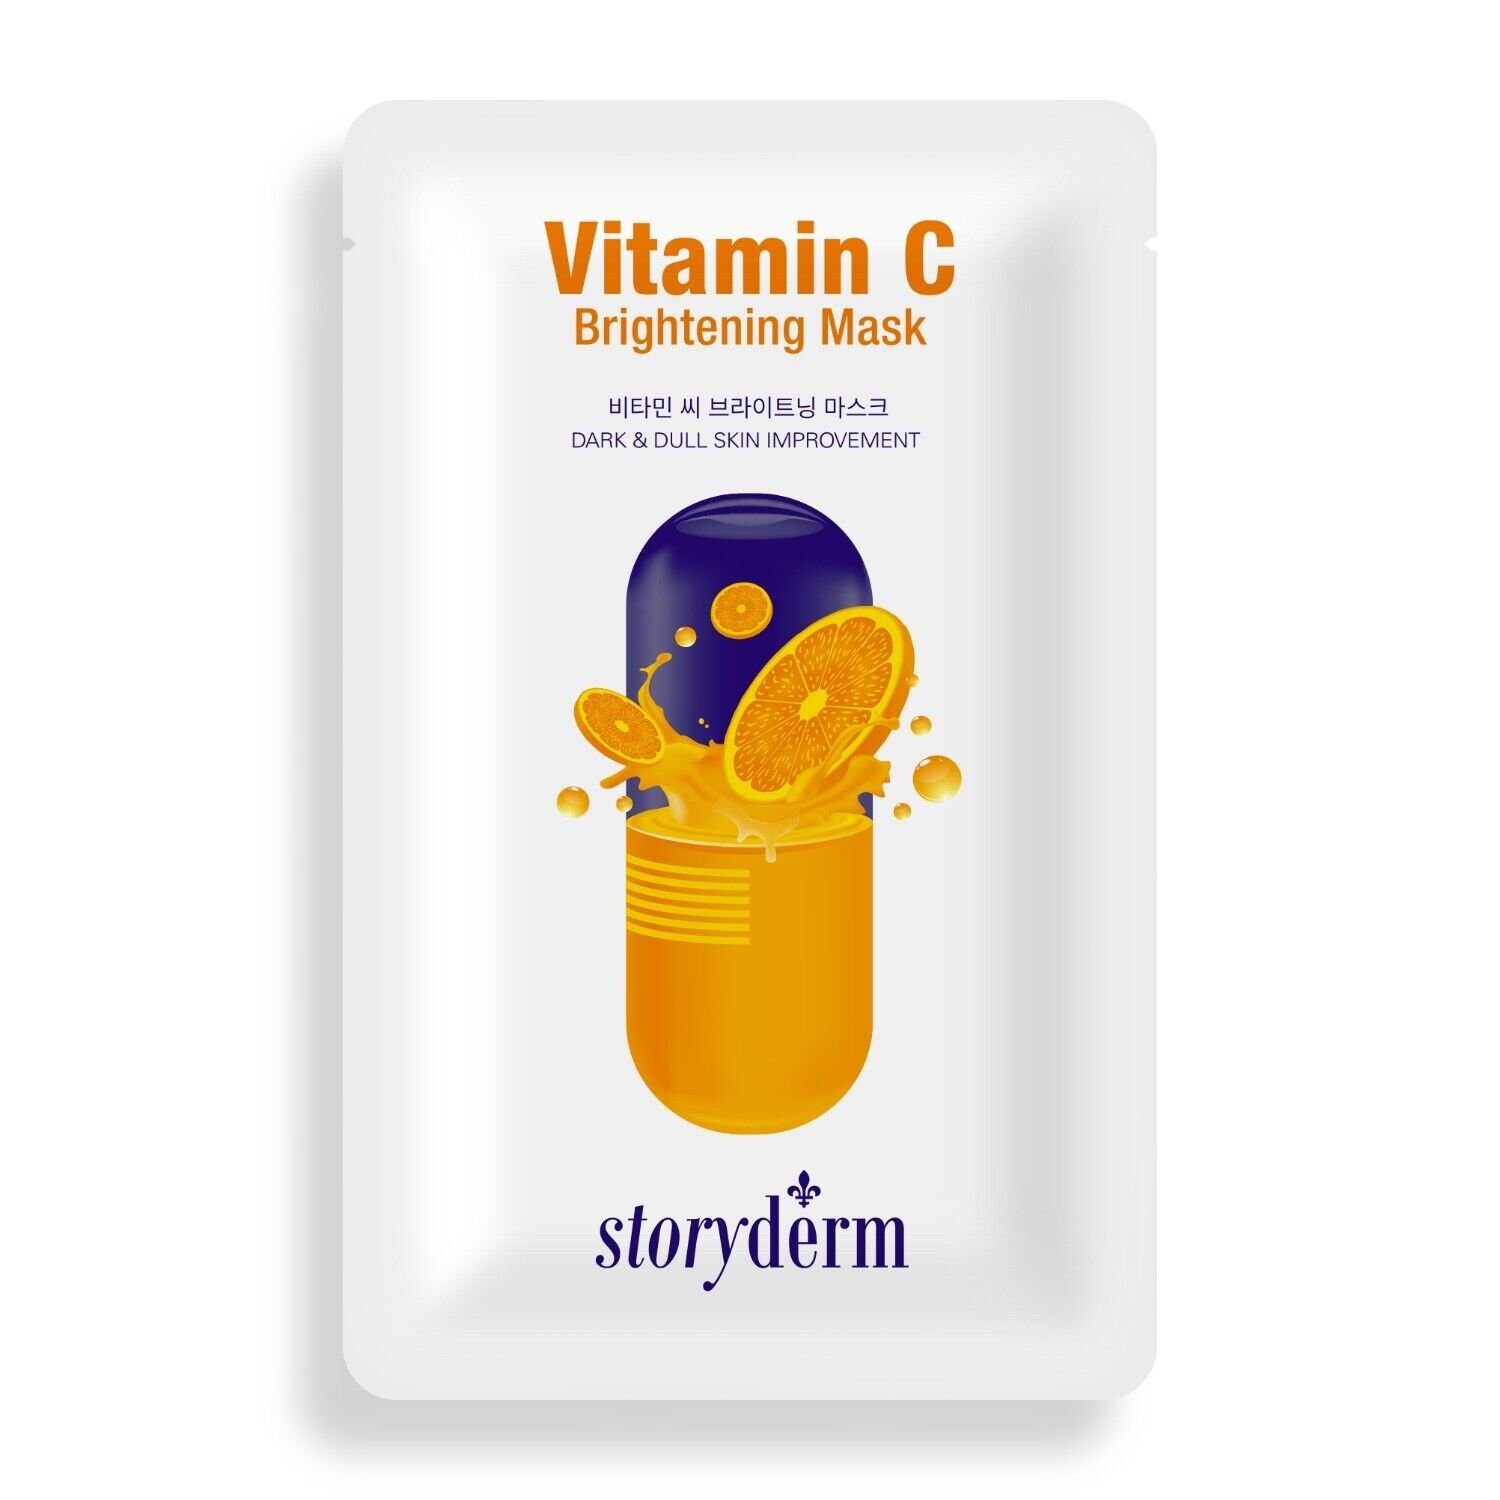 Storyderm Gesichtsmaske Gesichtsmaske VITAMIN Vitamin Premium NEUHEIT Korea Storyderm Pflege 1-tlg. Tuchmaske BRIGHTENING C, aus C